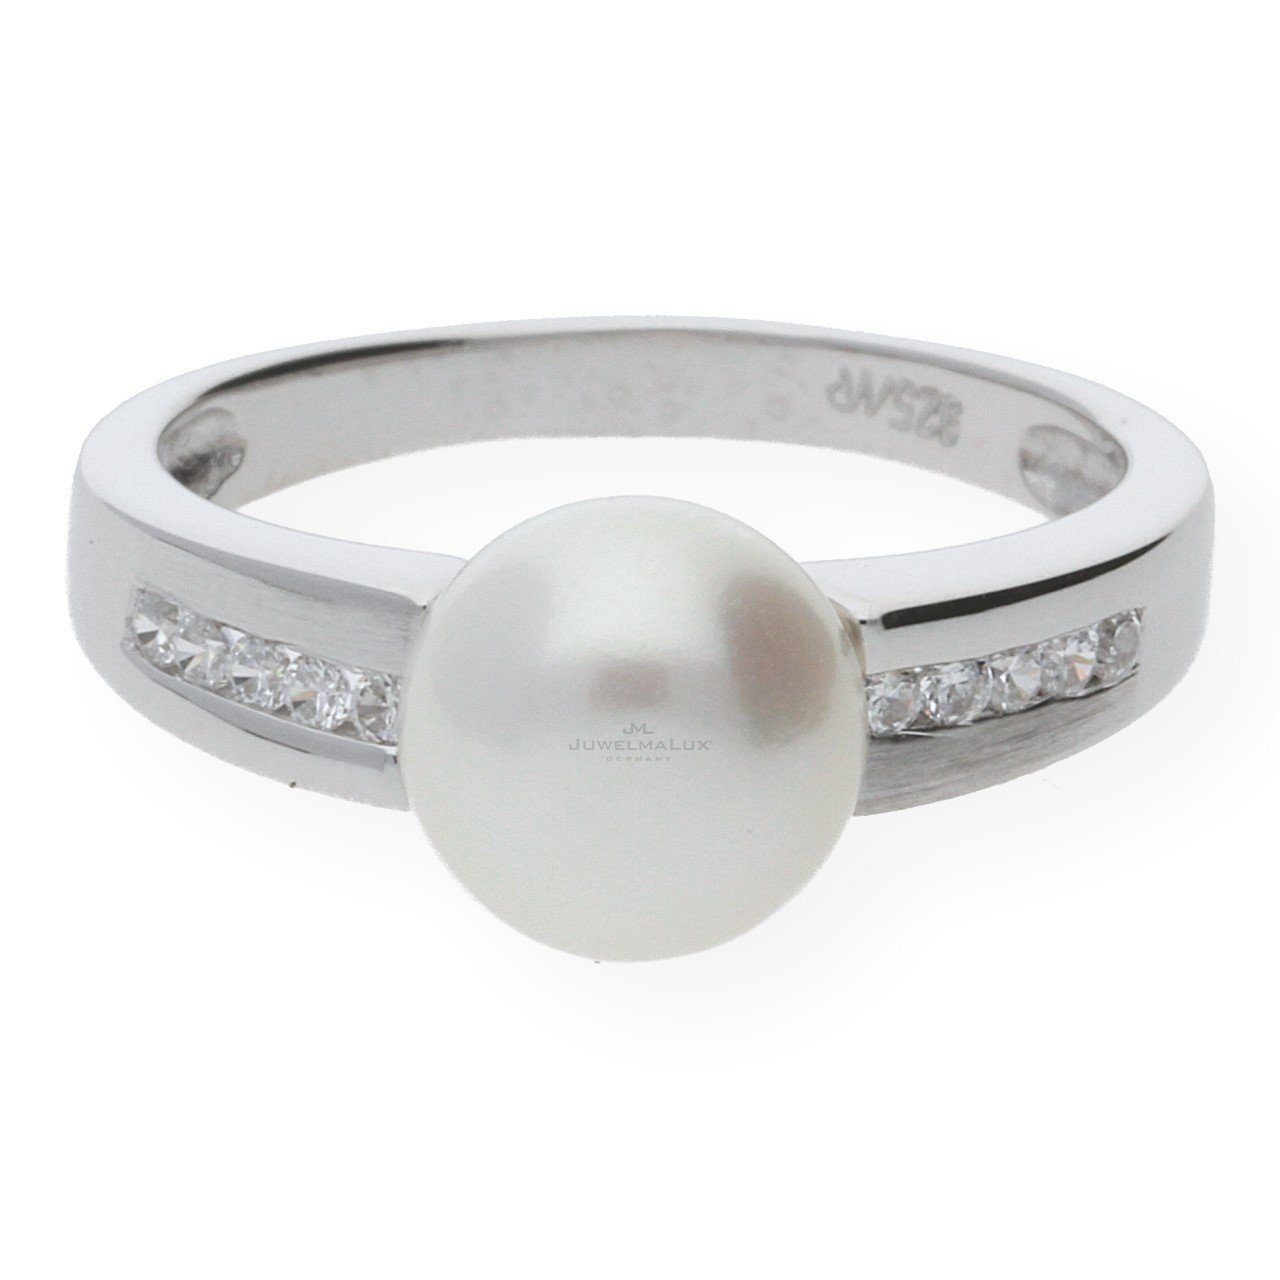 JuwelmaLux Fingerring JuwelmaLux Ring in Silber 925/000 mit Süsswasser-Zuchtperle JL20-07-00 (kein Set, 1-tlg)